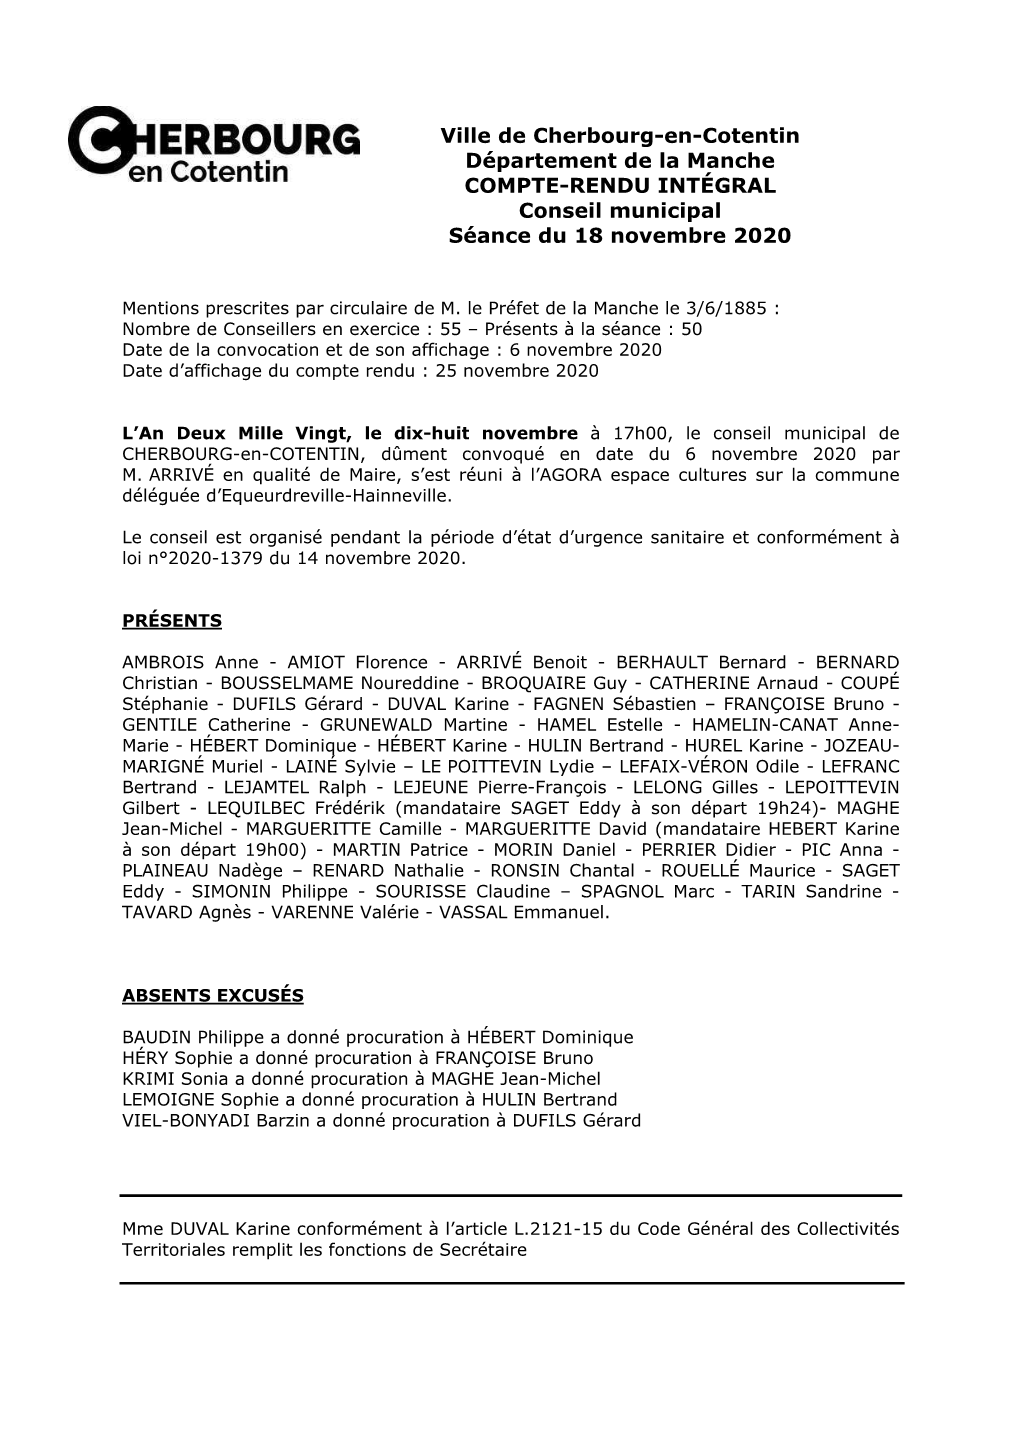 Ville De Cherbourg-En-Cotentin Département De La Manche COMPTE-RENDU INTÉGRAL Conseil Municipal Séance Du 18 Novembre 2020